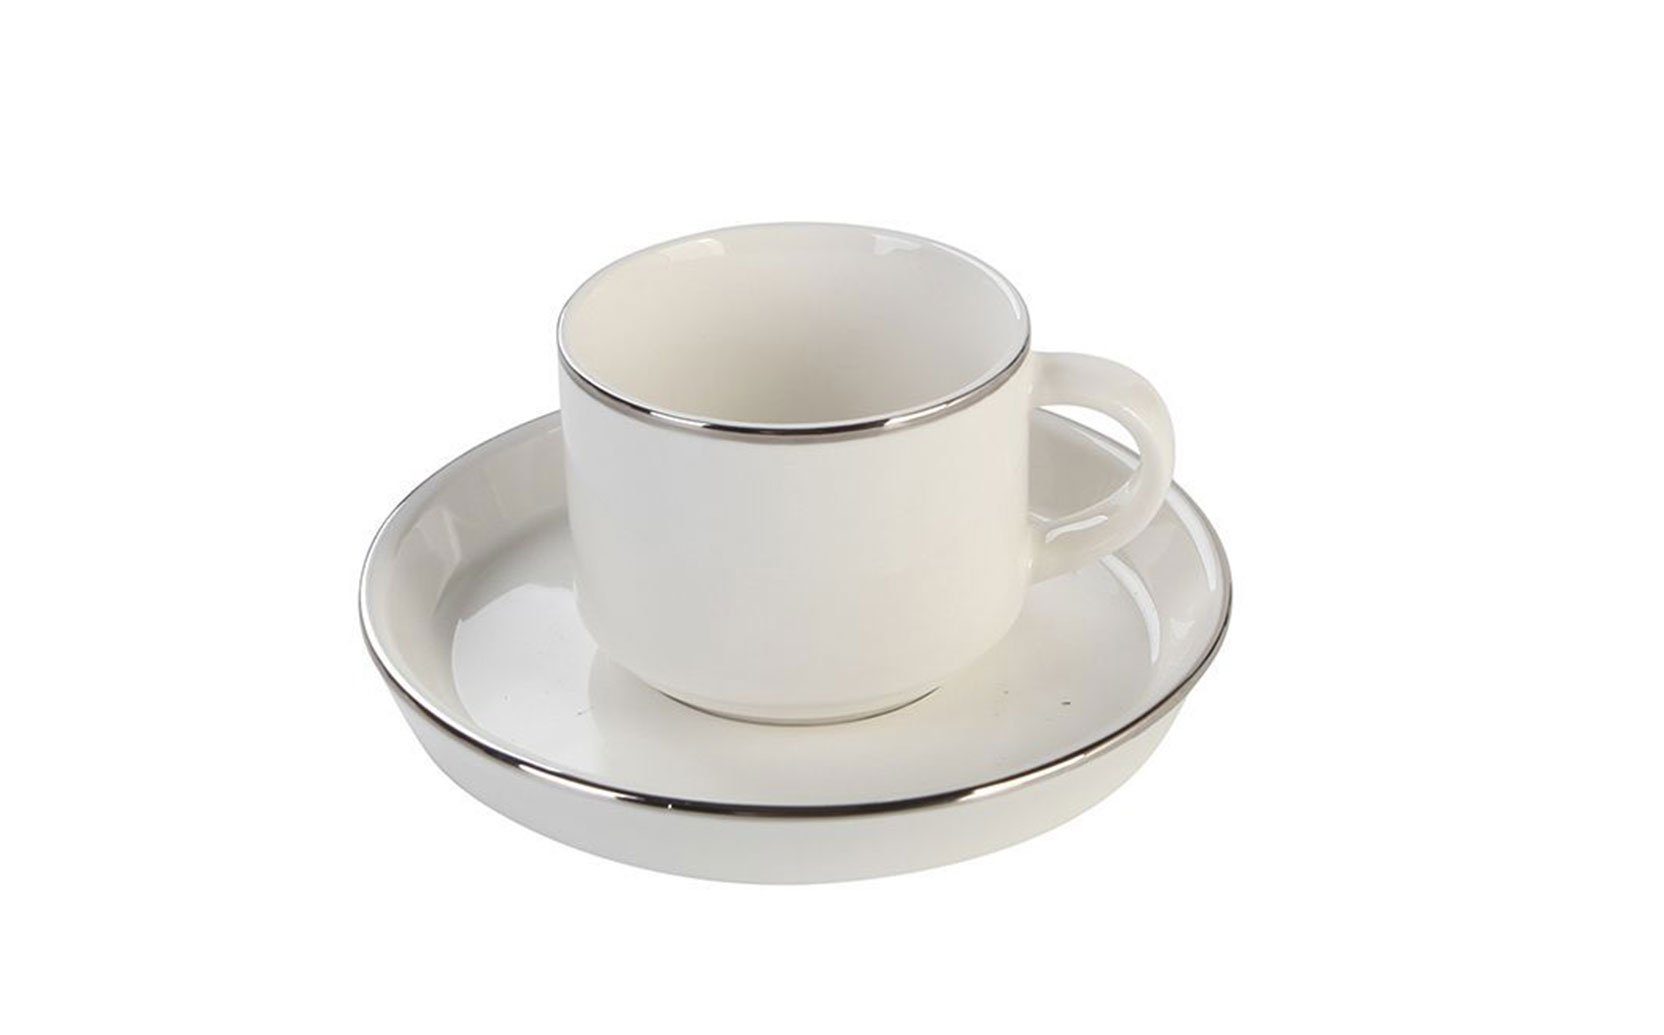 Özberk Tasse Lunel, 6 Kaffeebecher Porzellan Stück Porzellan, Silber 12-teilig umrandet